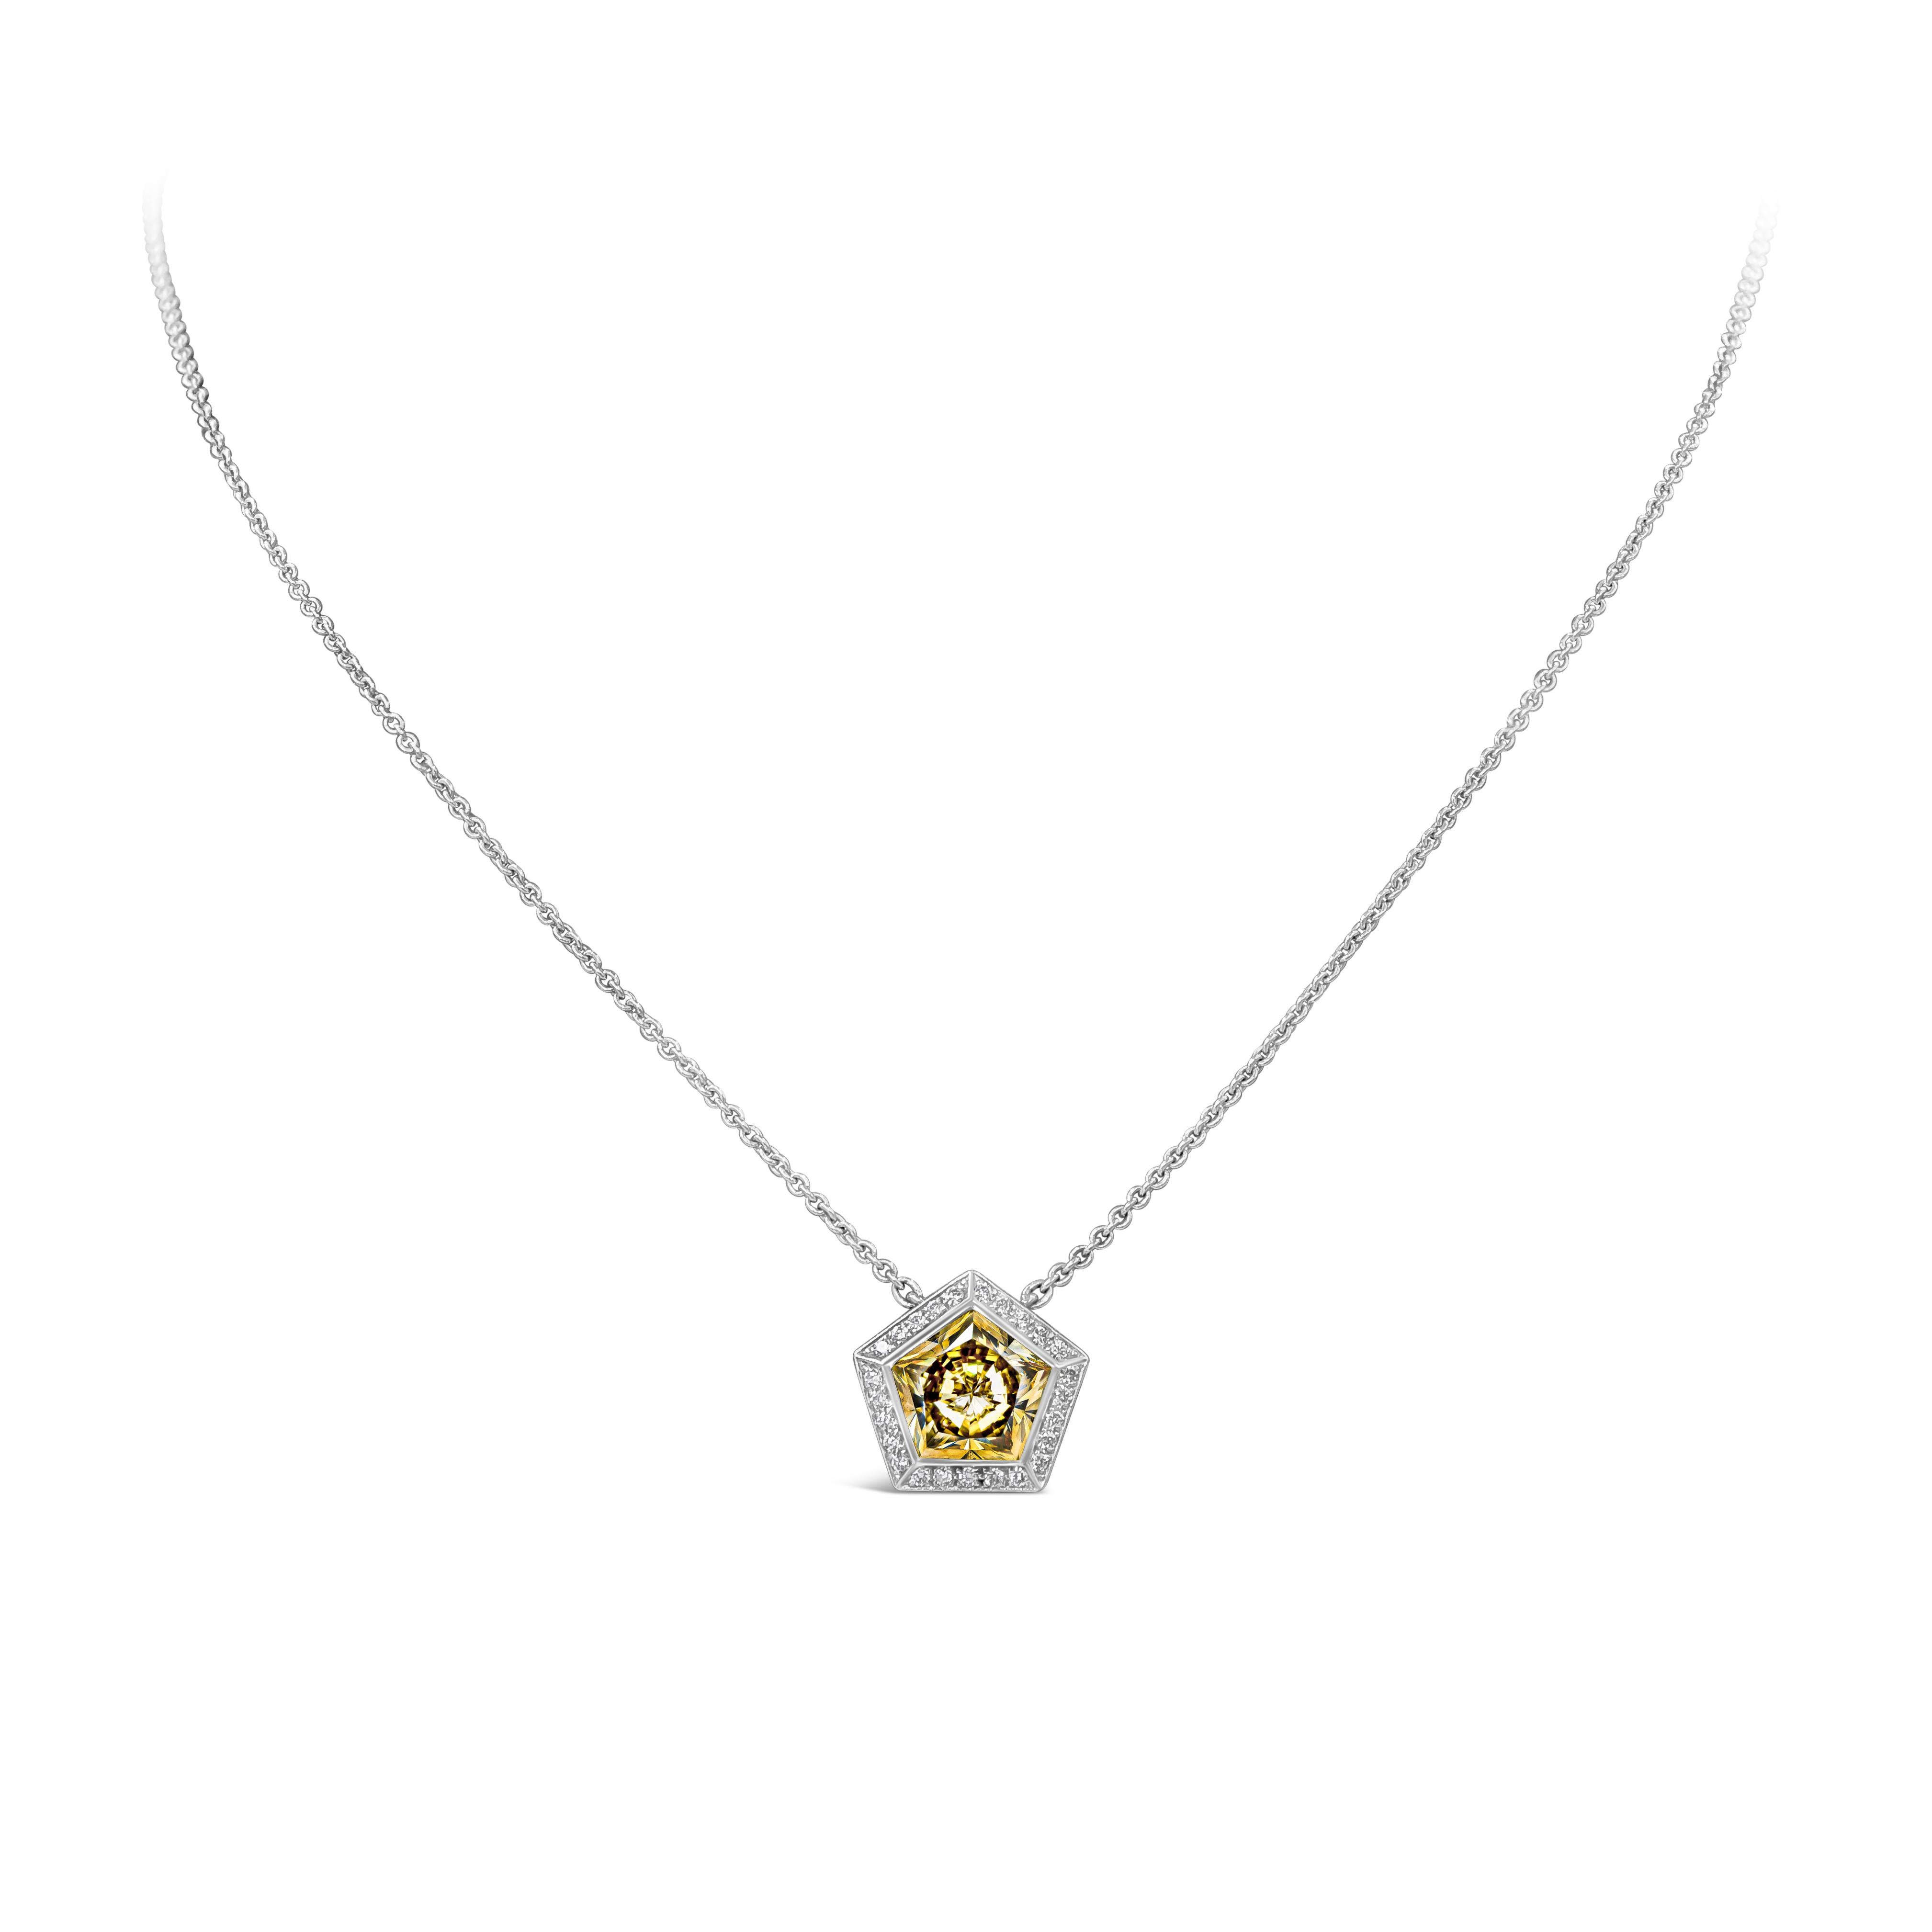 Ein stilvolles und einzigartiges Collier mit einem gelben Diamanten im Fünfeckschliff mit einem Gewicht von 2,13 Karat, eingefasst in einen Halo aus runden Brillanten mit einem Gesamtgewicht von 0,15 Karat. An einer verstellbaren